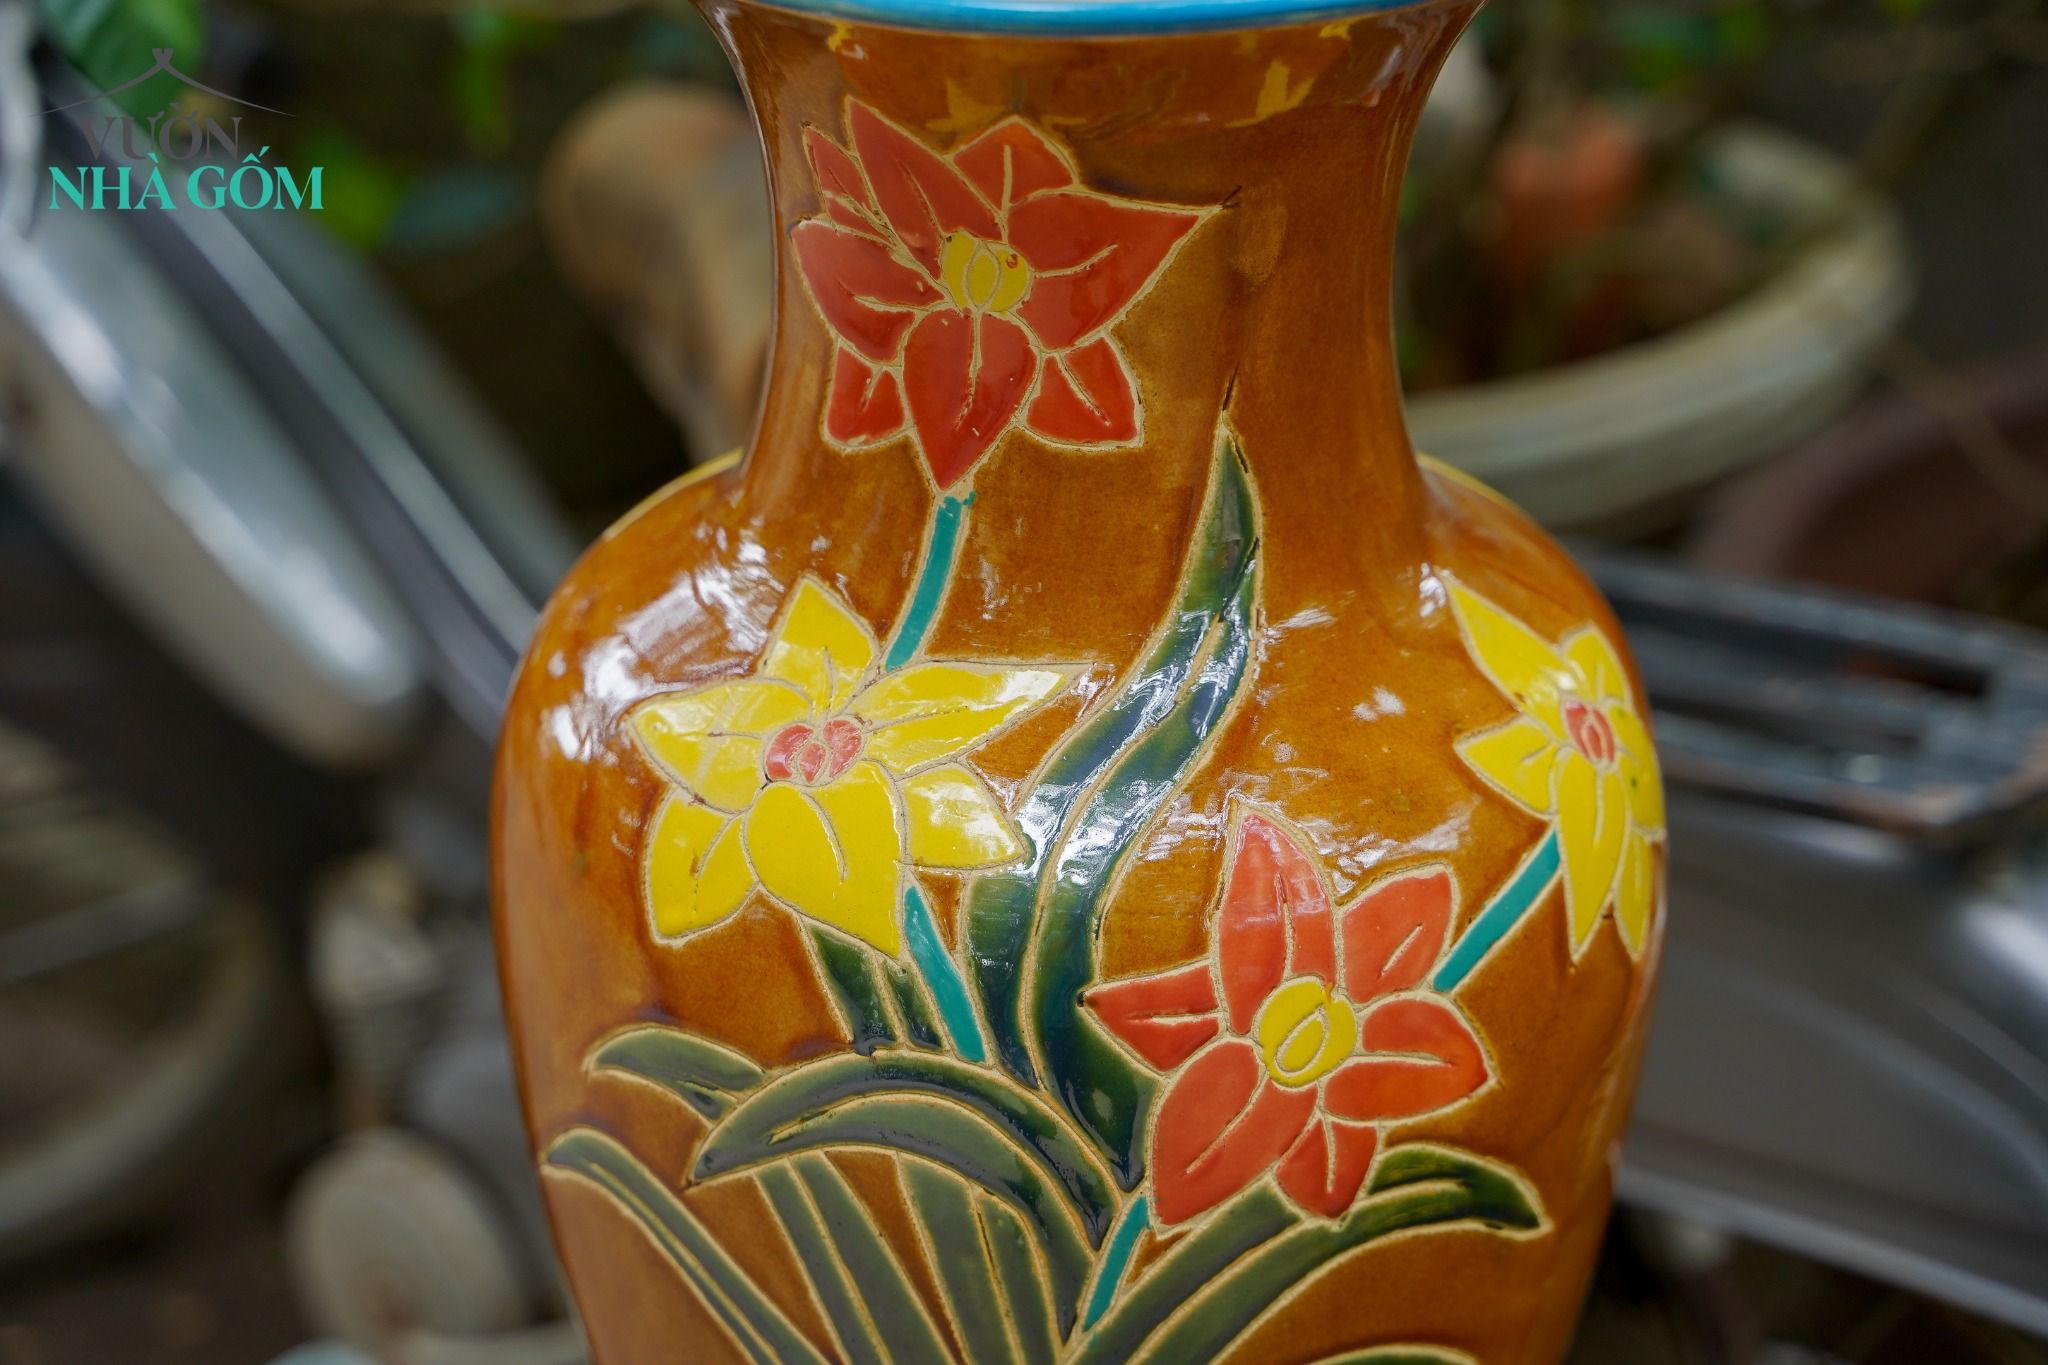  Bình khắc thủ công hoạ tiết hoa mai và hoa lan, 2 màu, gốm mỹ nghệ Nam Bộ, C53xR22 